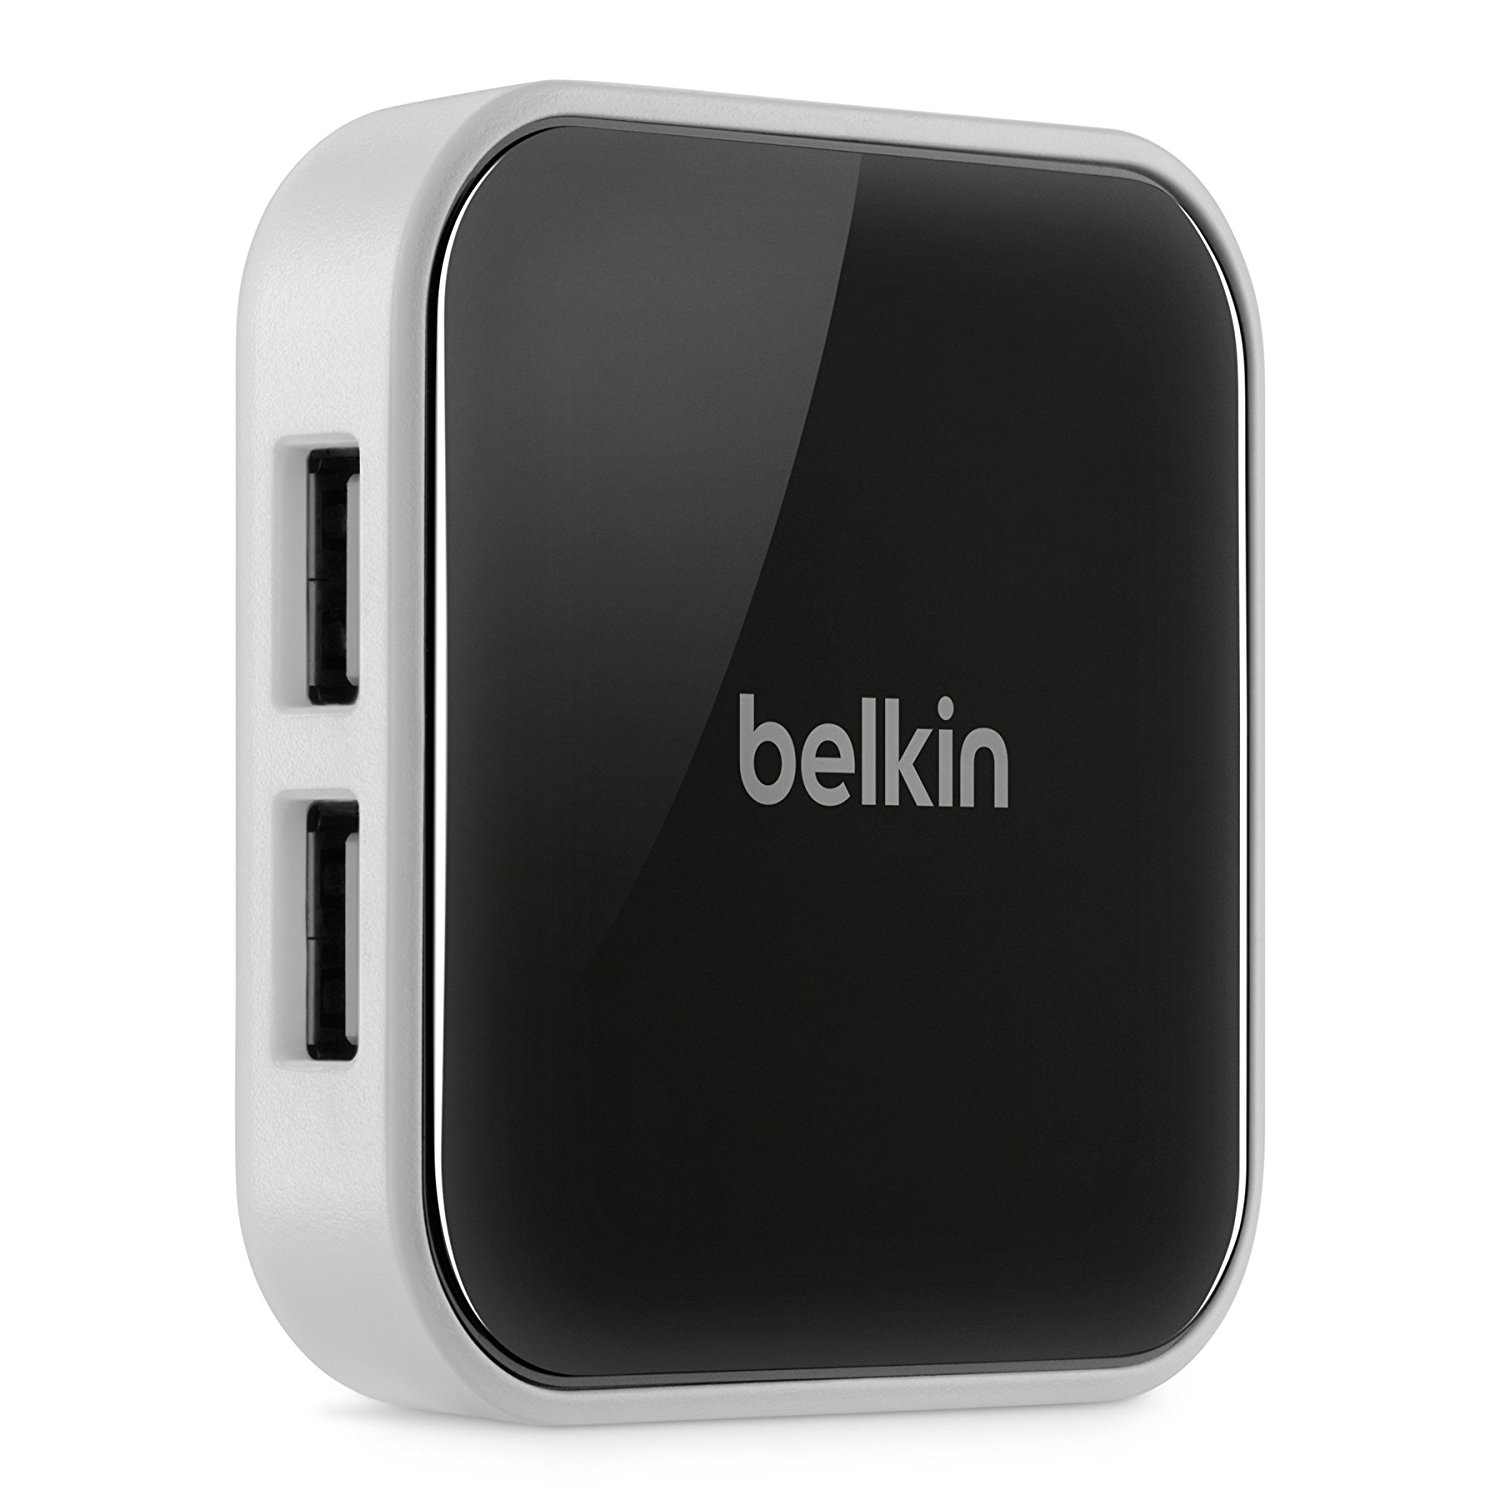 Belkin hi-speed usb 2.0 7-port hub drivers for mac